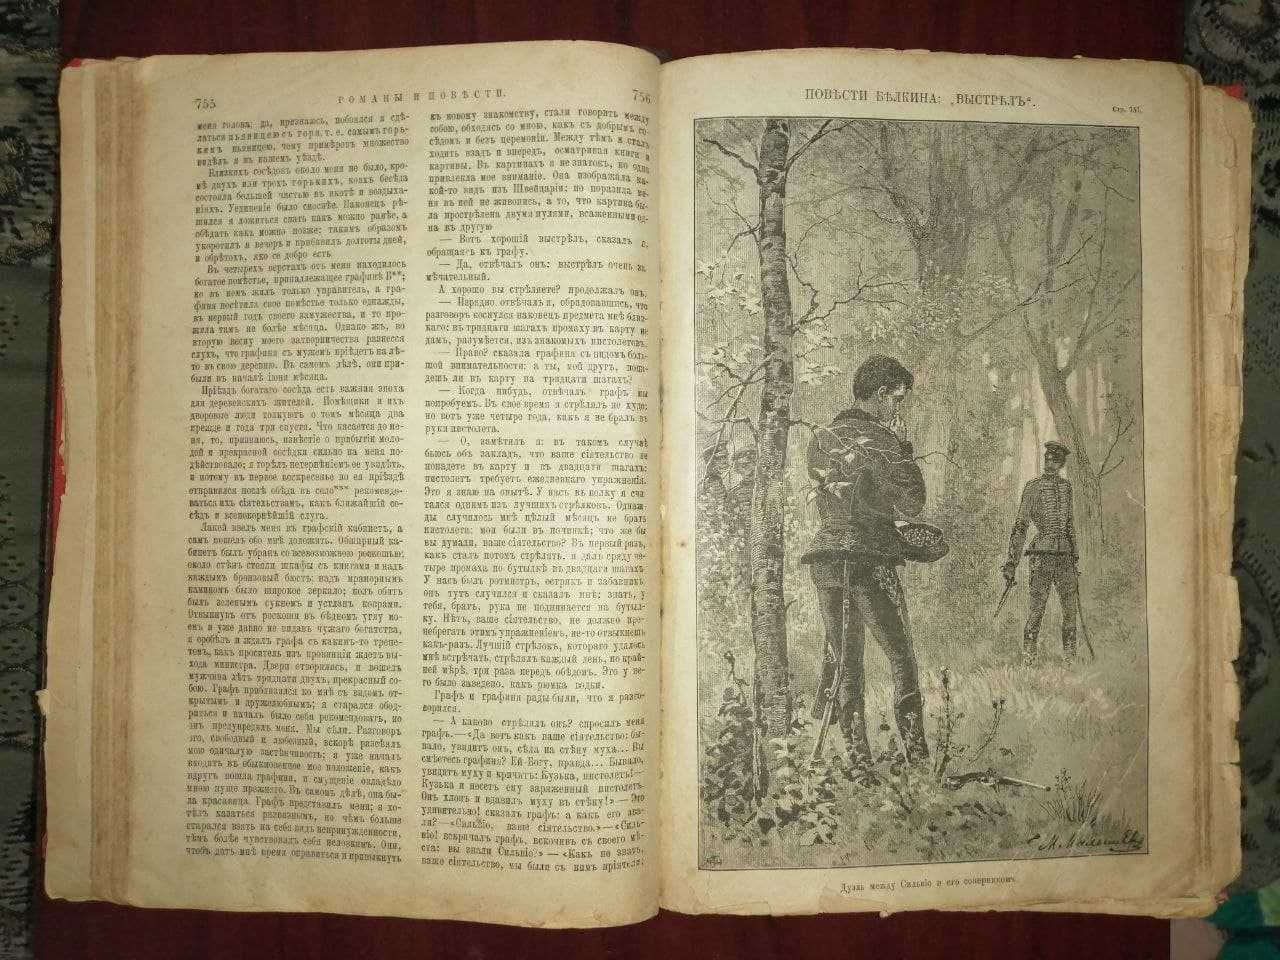 Пушкин А. С., 1894 г., гравюра В. Матэ